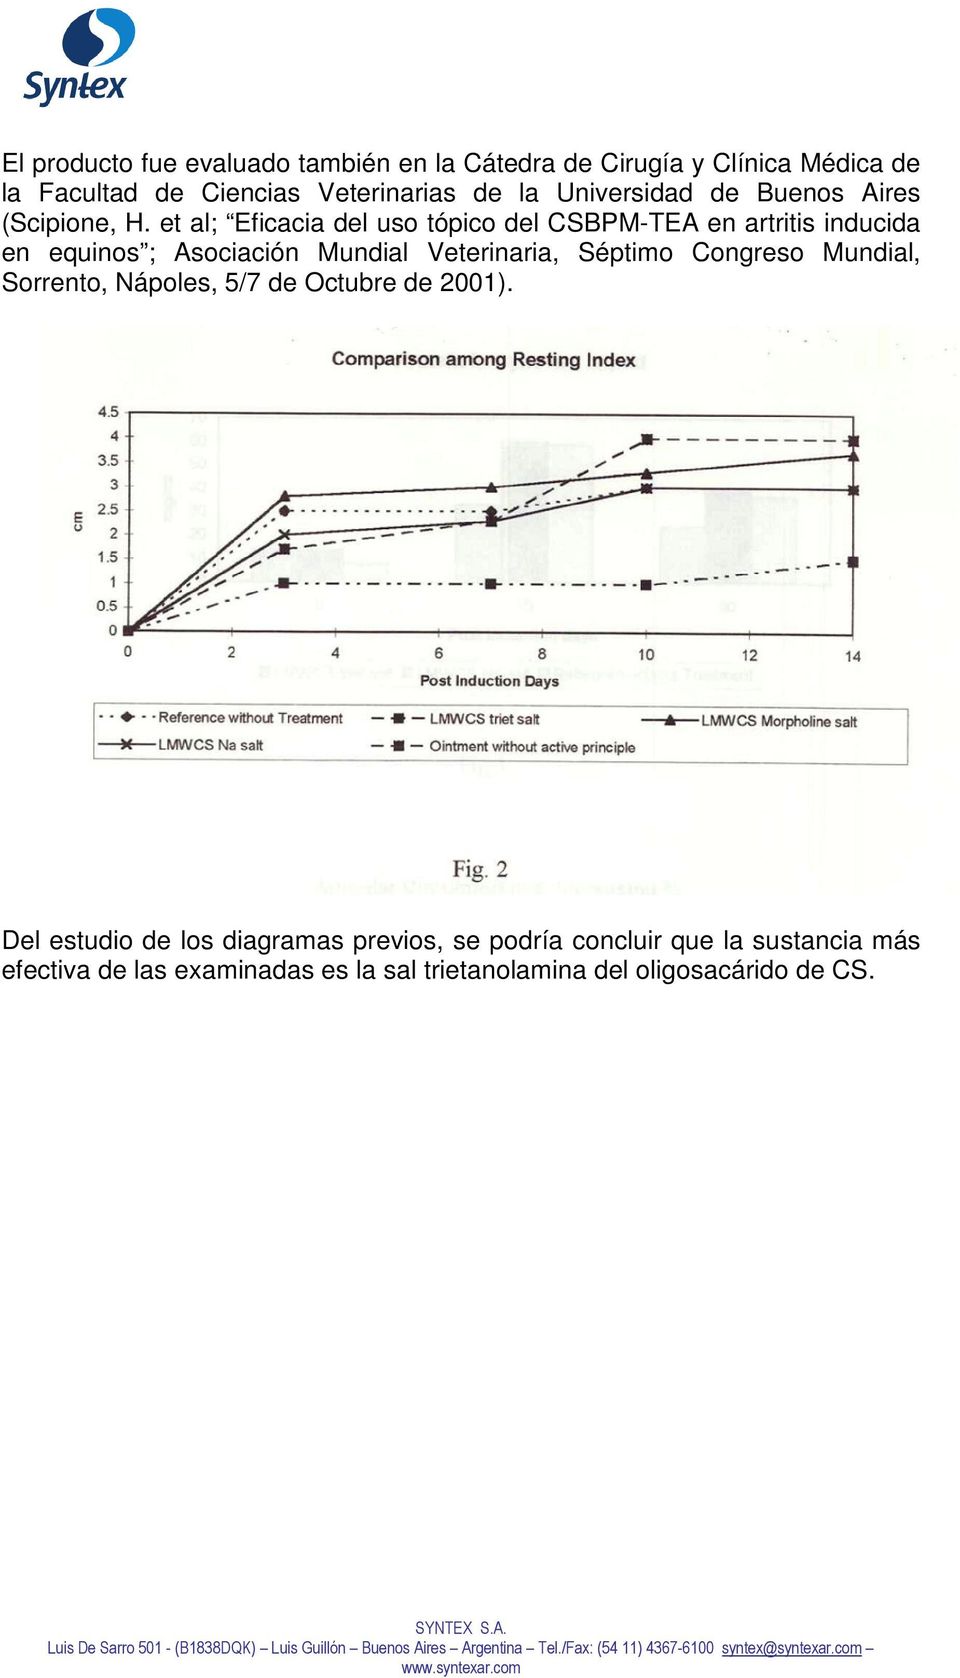 et al; Eficacia del uso tópico del CSBPM-TEA en artritis inducida en equinos ; Asociación Mundial Veterinaria, Séptimo